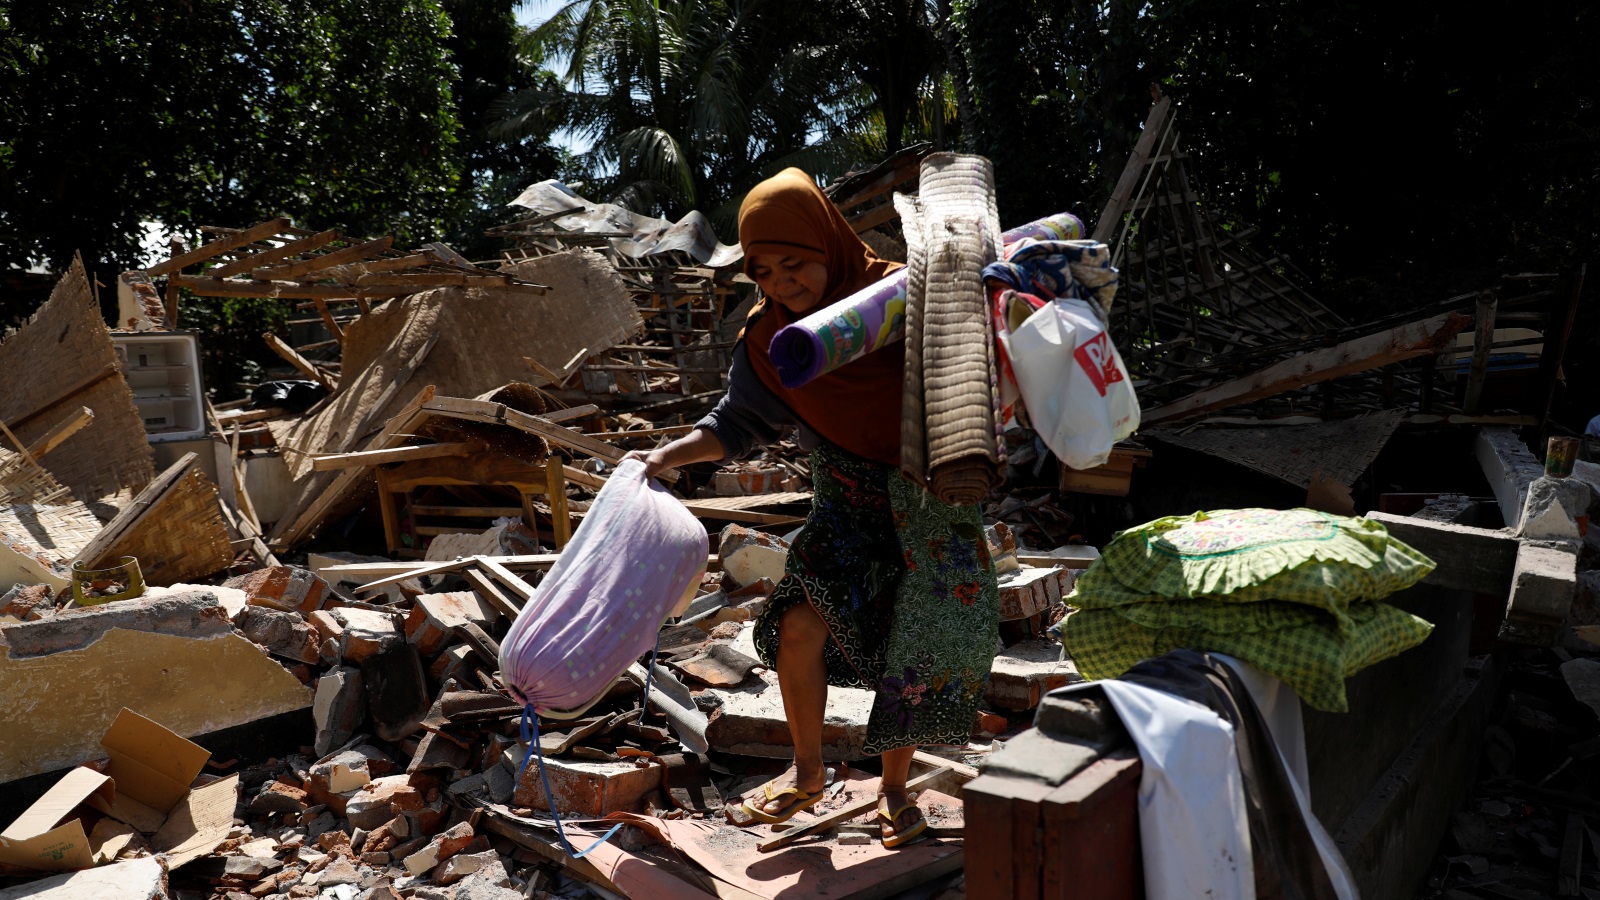 سكان الجزيرة باتوا في العراء خوفا من هزات ارتدادية قد تلحق المزيد من الأضرار (رويترز)